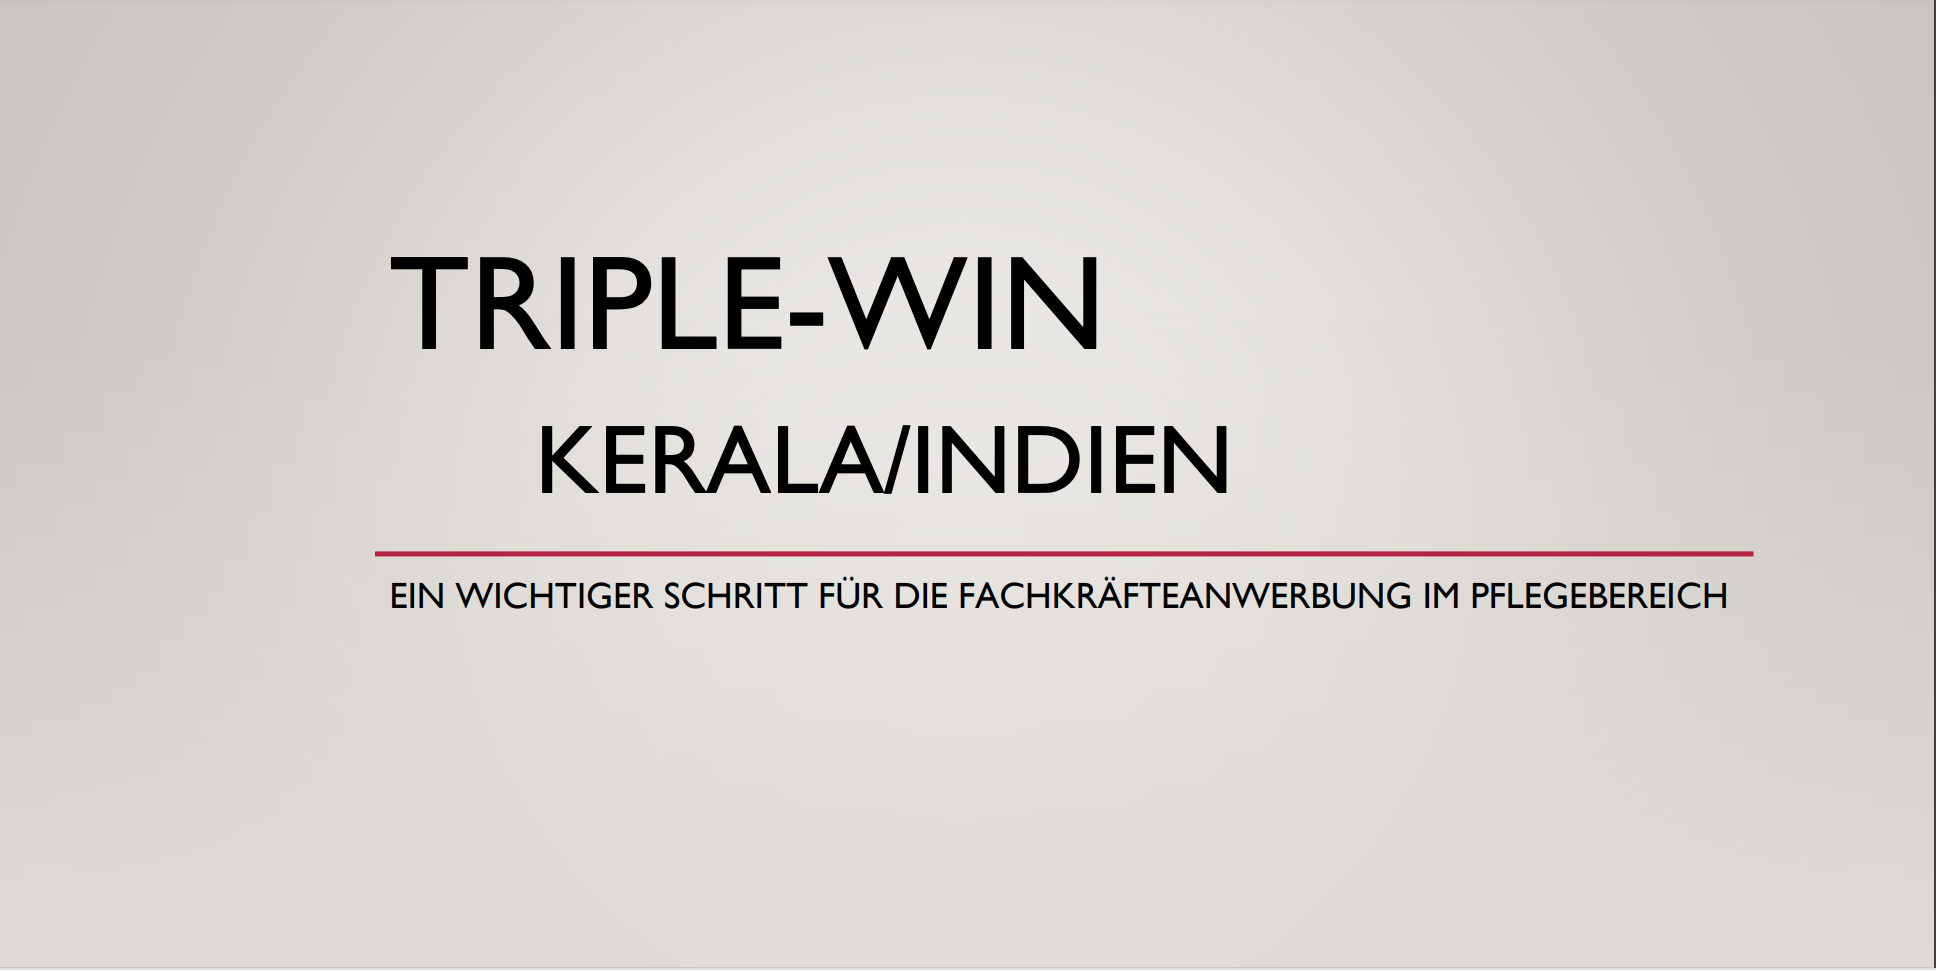 Gegen den Pflegekräftemangel im Gesundheitswesen. Das“TripleWin – Programm“  Eine erfolgreiche indisch-deutsche Kooperation. Aktiv und mit echten Lösungen gegen den Fachkräftemangel, den Pflegenotstand im Gesundheitswesen.